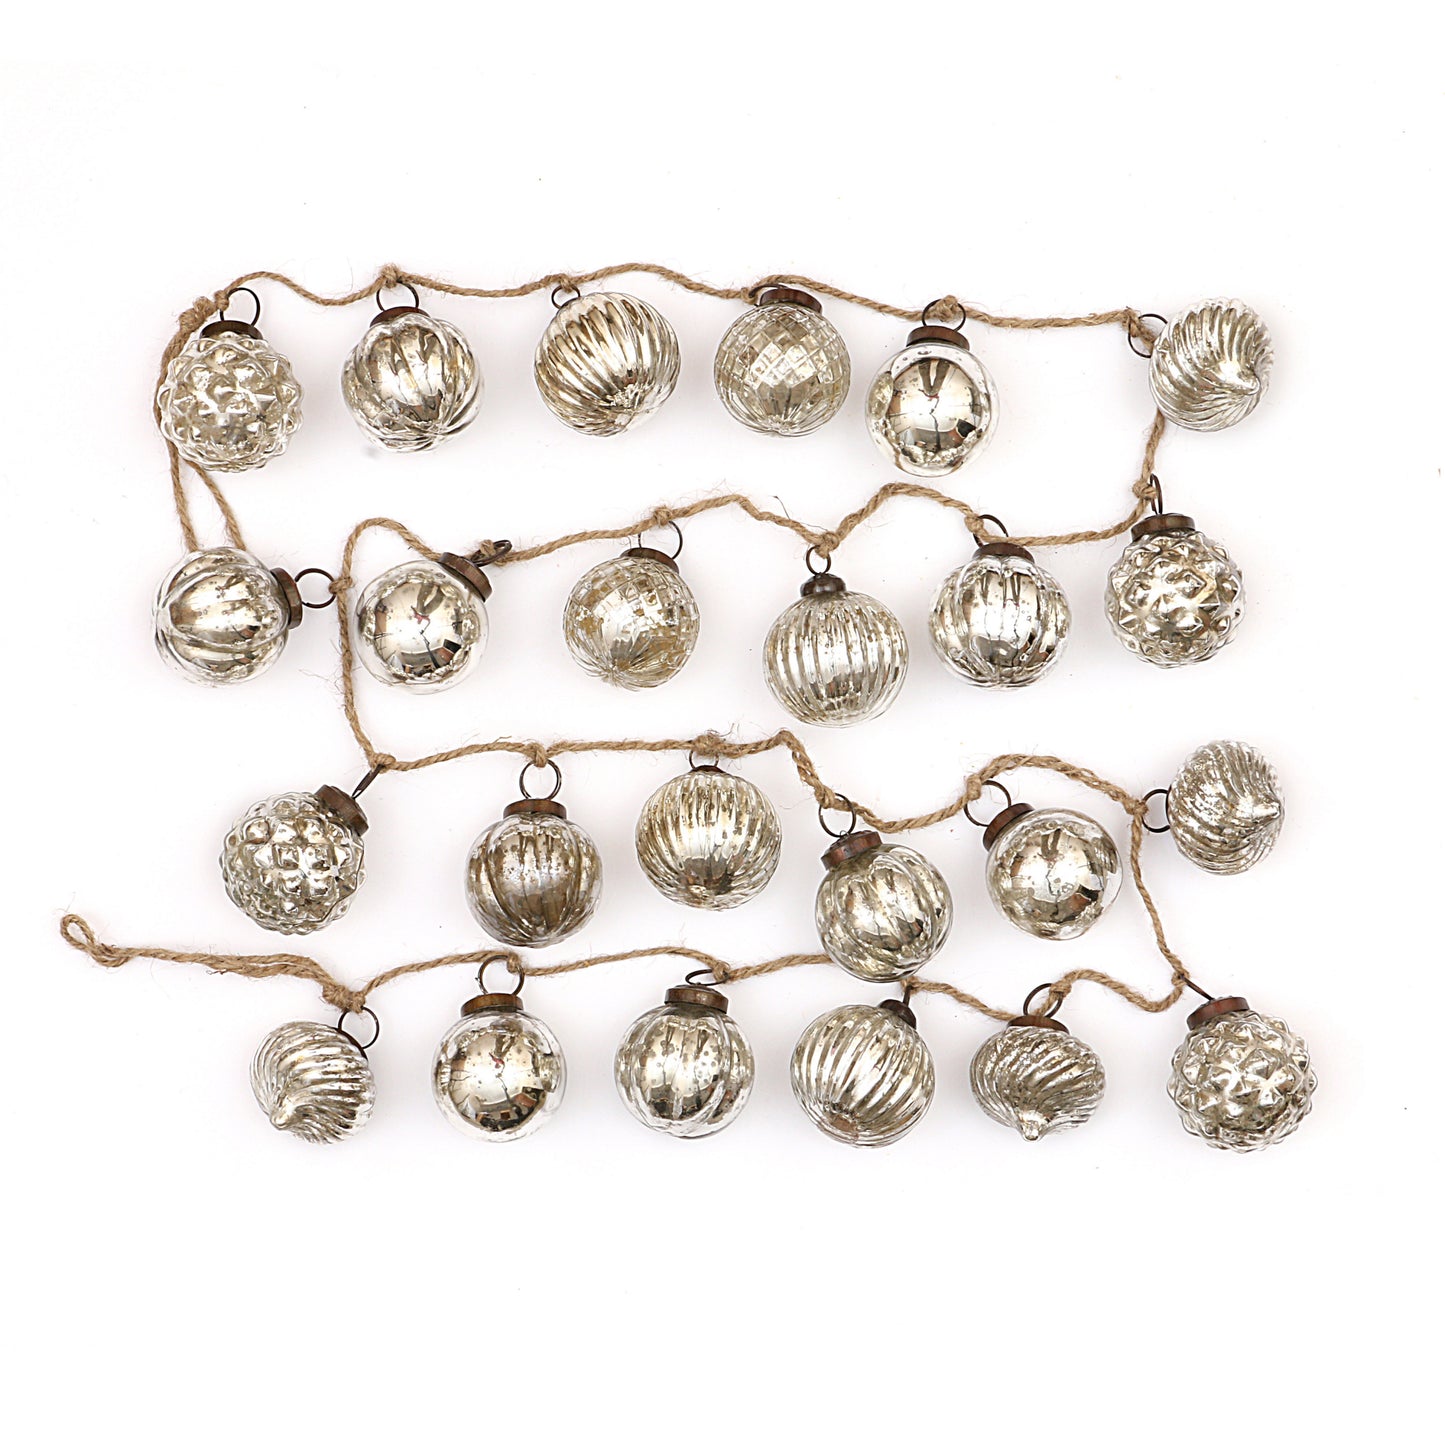 72" Embossed Mercury Glass Ball Ornament Garland - Cream